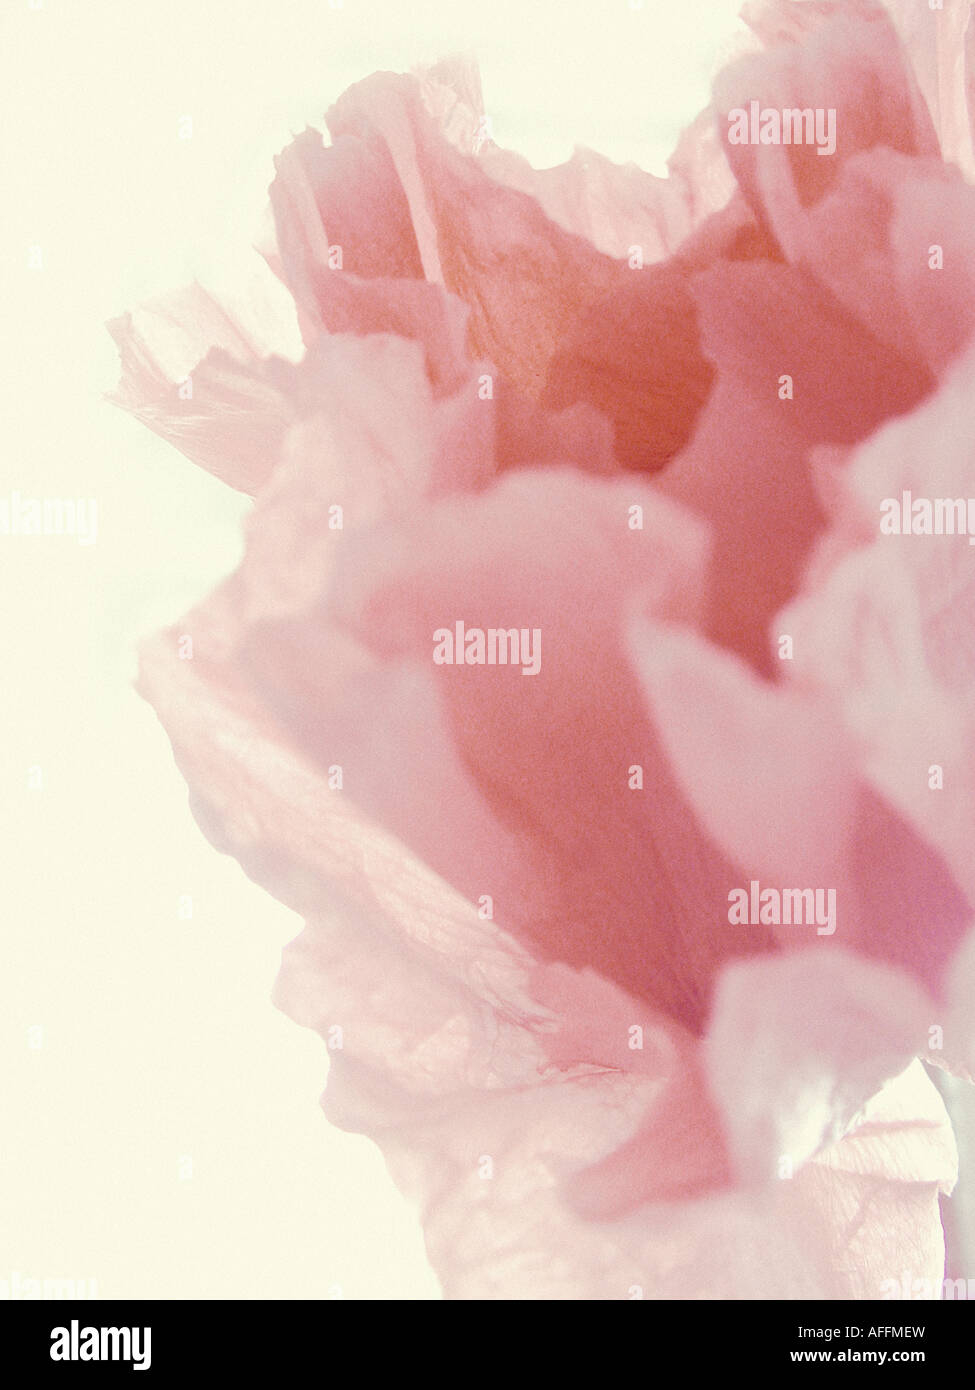 Portrait de l'usine d'une seule fleur de pivoine rose pâle tourné contre un fond crème Banque D'Images